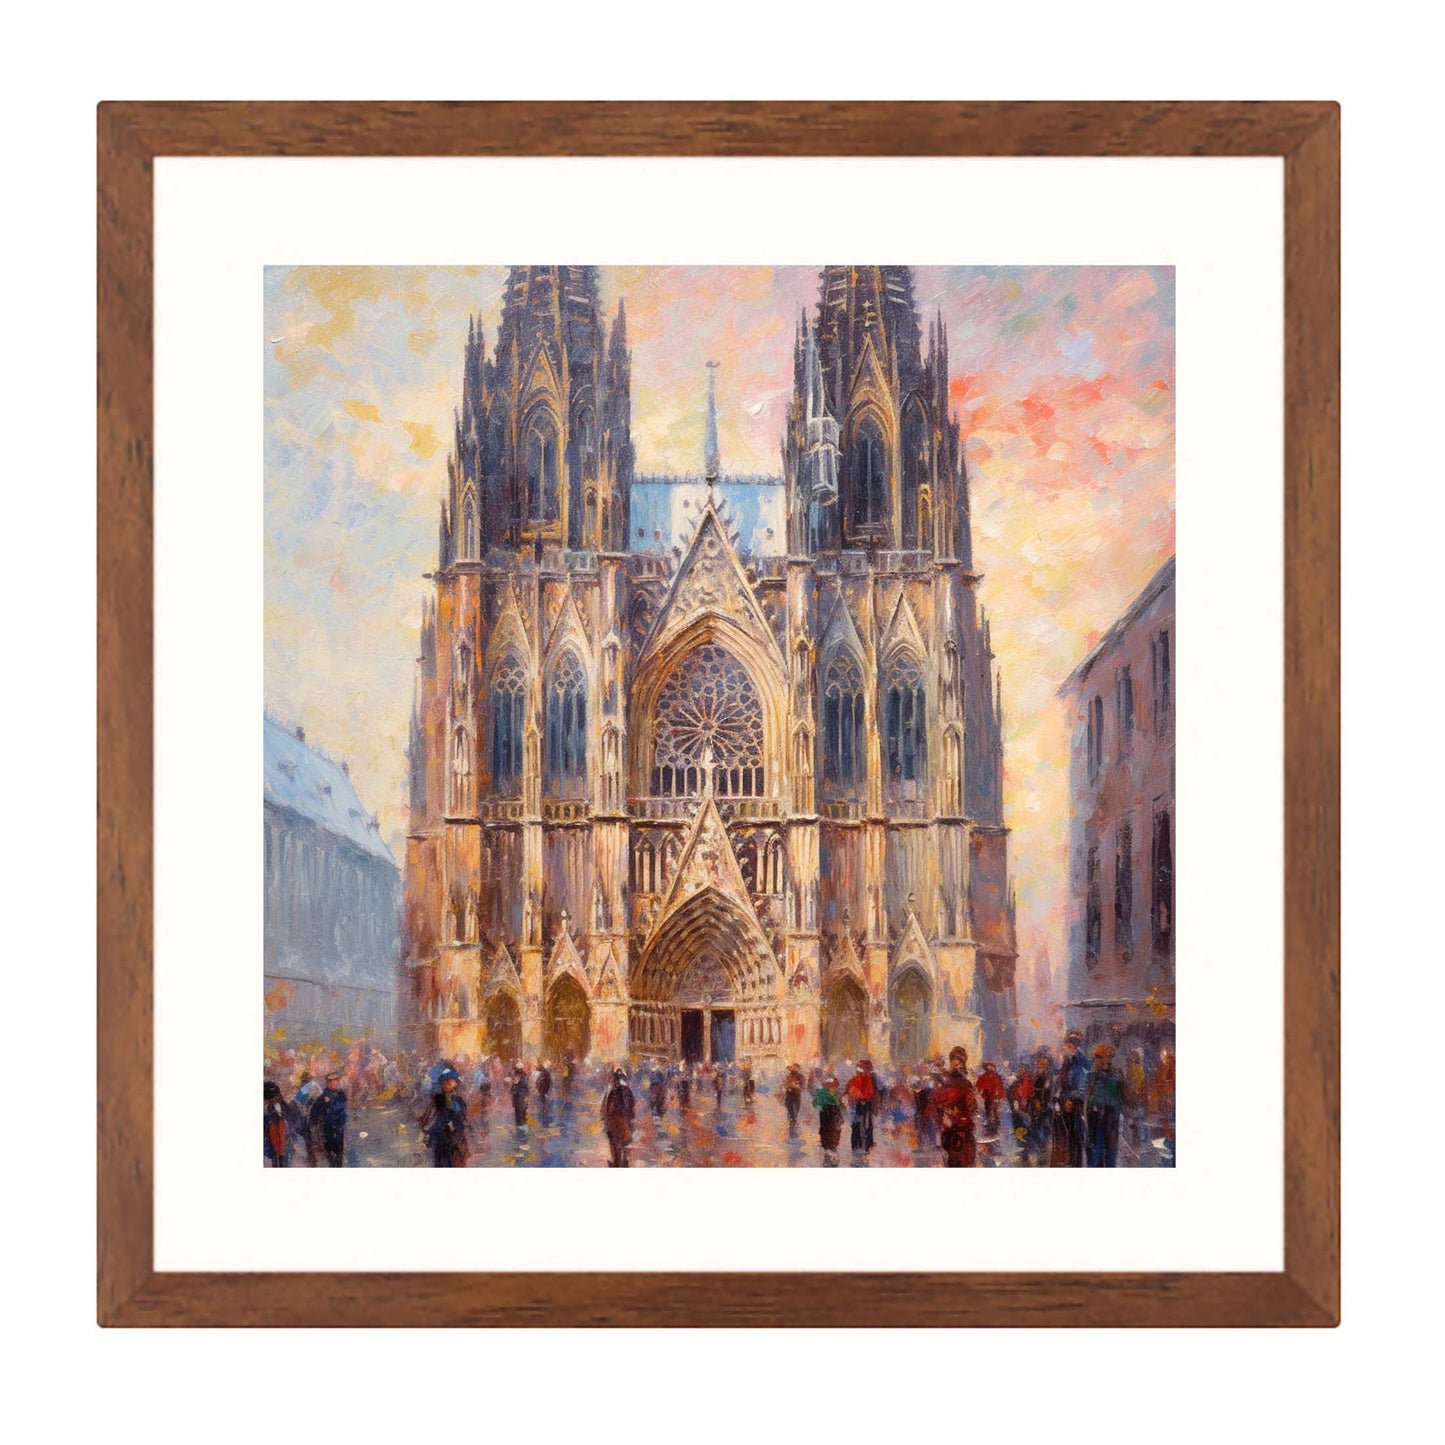 Kölner Dom - Wandbild in der Stilrichtung des Impressionismus